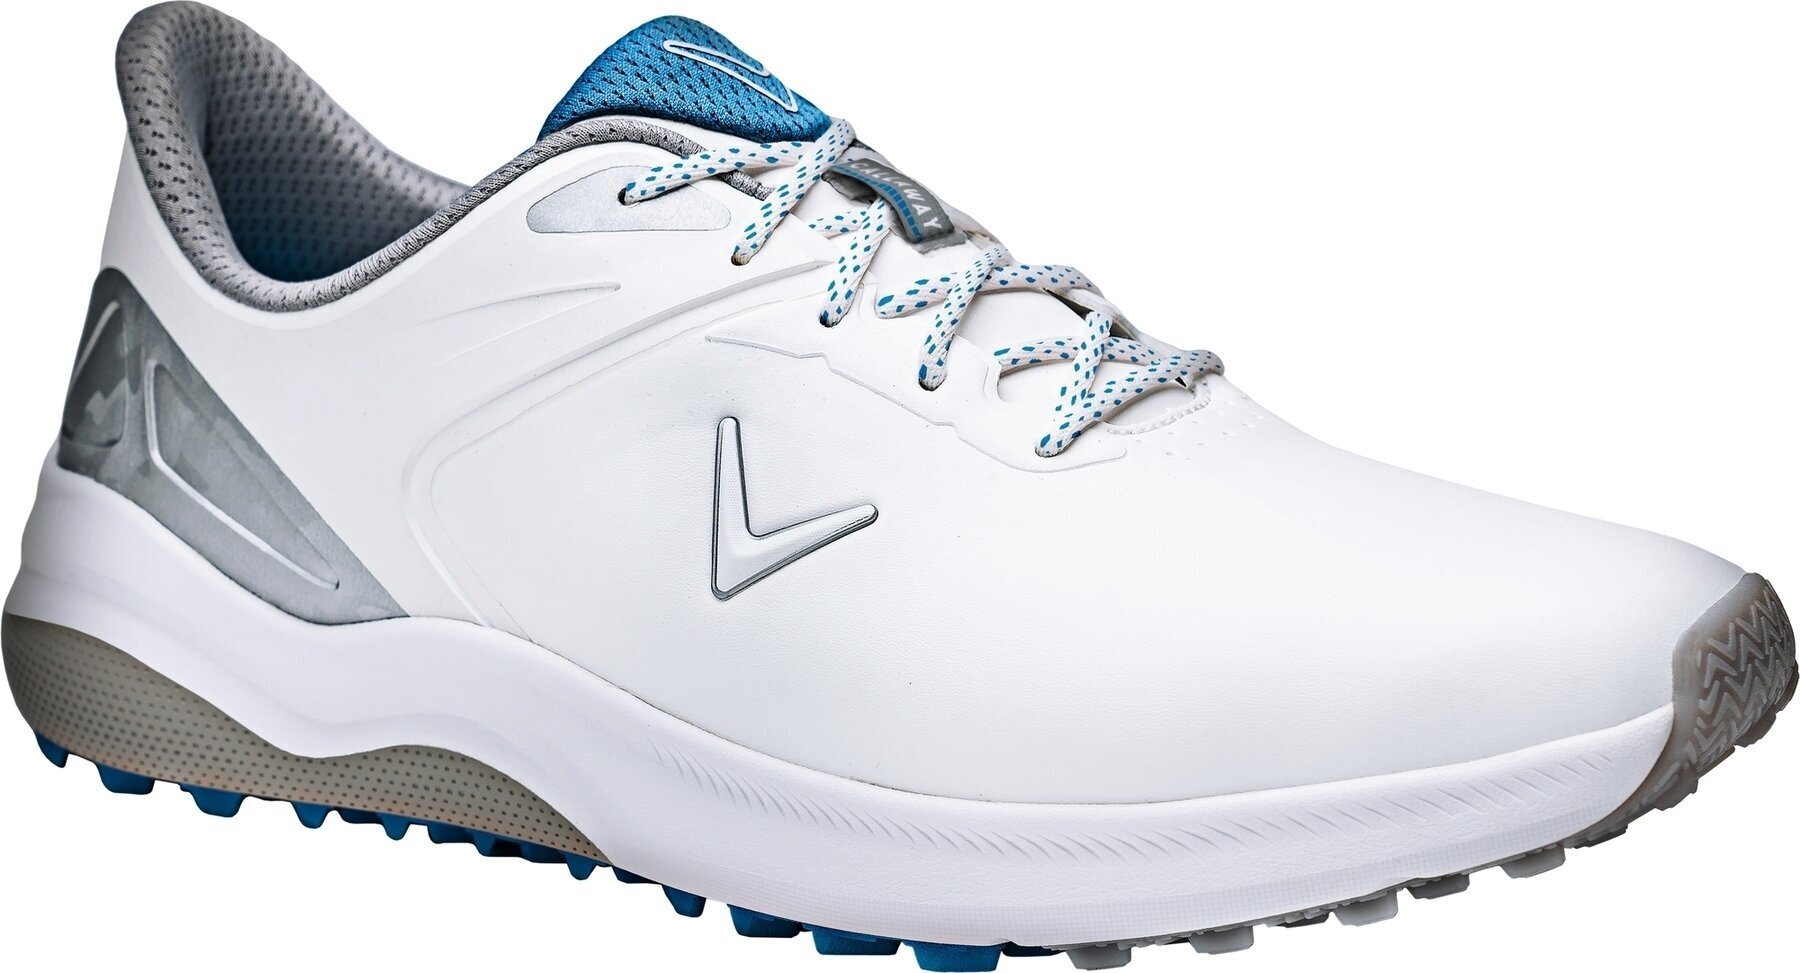 Ανδρικό Παπούτσι για Γκολφ Callaway Lazer Mens Golf Shoes White/Silver 43